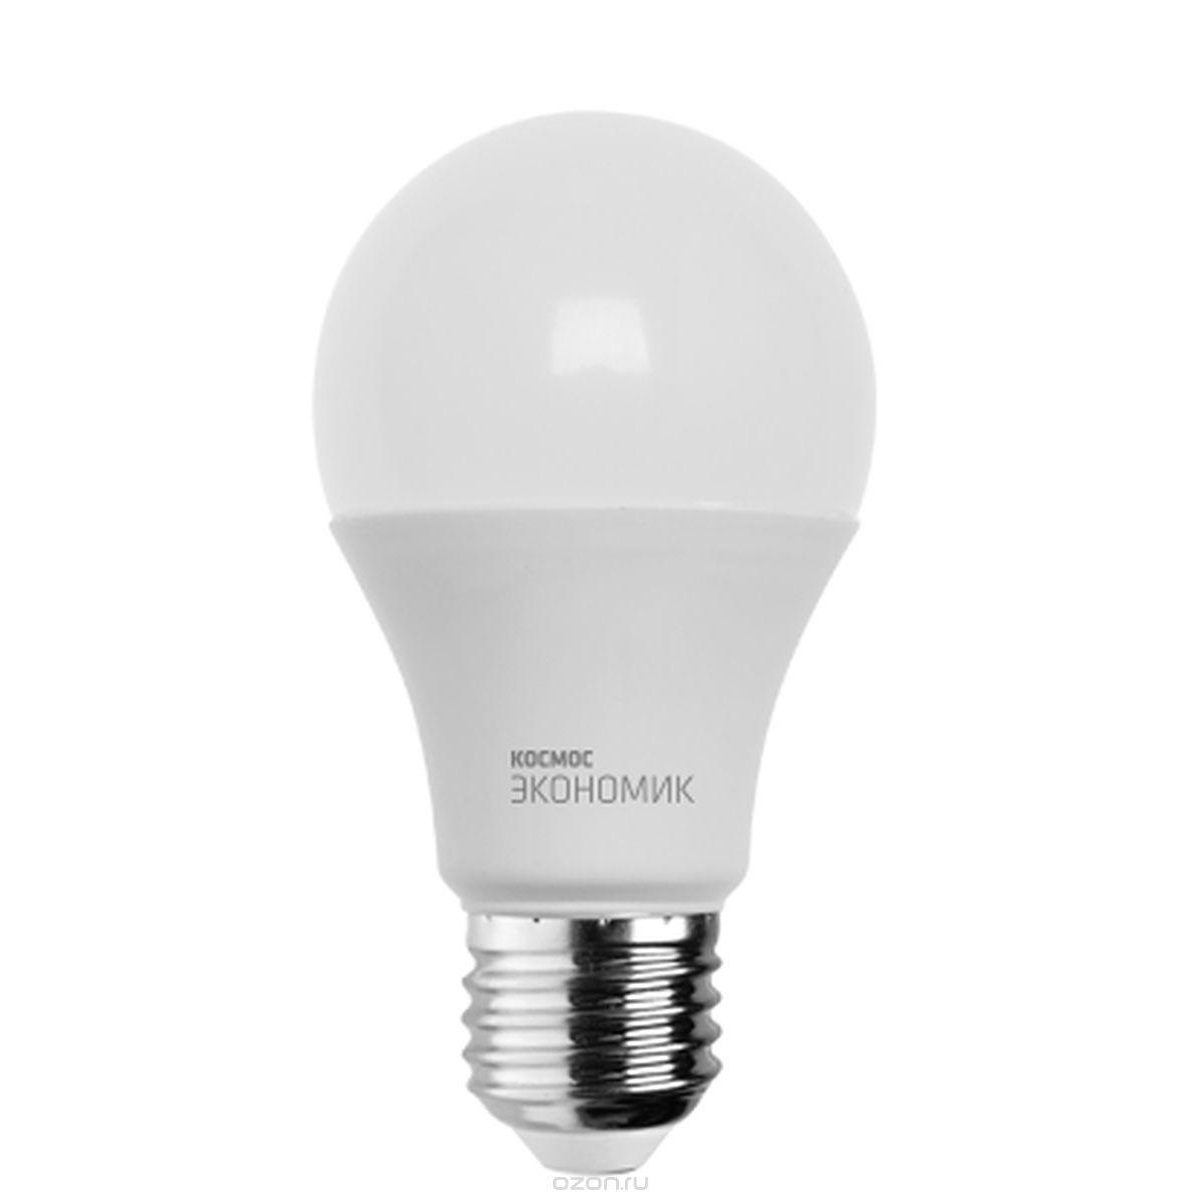 Светодиодная лампа FL-LED G4-SMD 10W V К G4 производства Foton Lighting